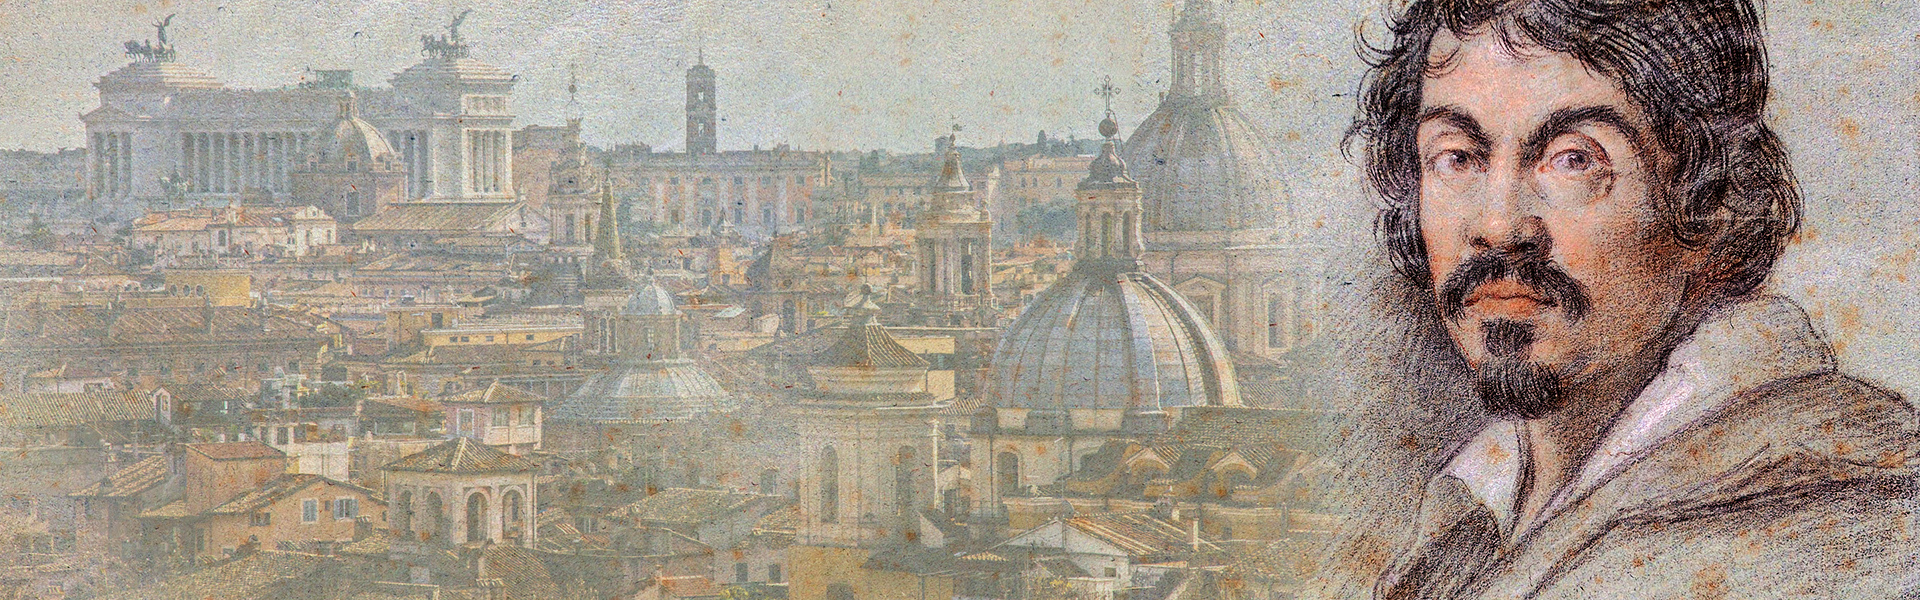 Idee per il Ponte dei Morti: come vedere Caravaggio gratis per i musei e le chiese di Roma